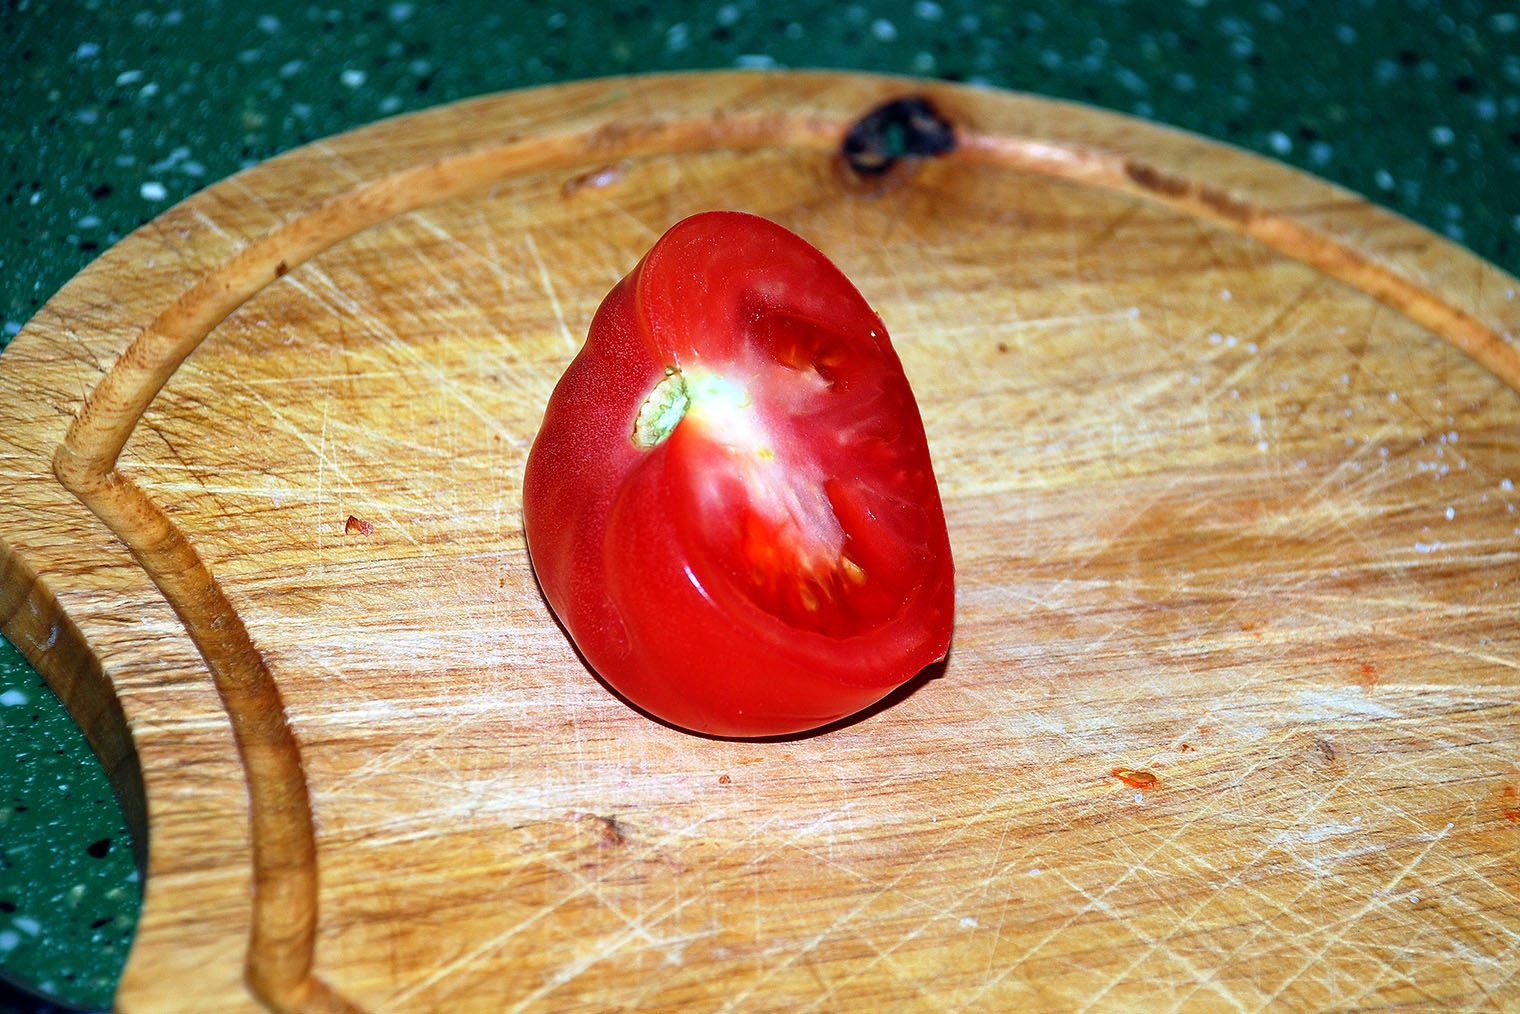 Снаружи помидор может быть красным, а внутри видны белые пятна жесткой ткани. Фотография: Andrew Swarga / Shutterstock / FOTODOM